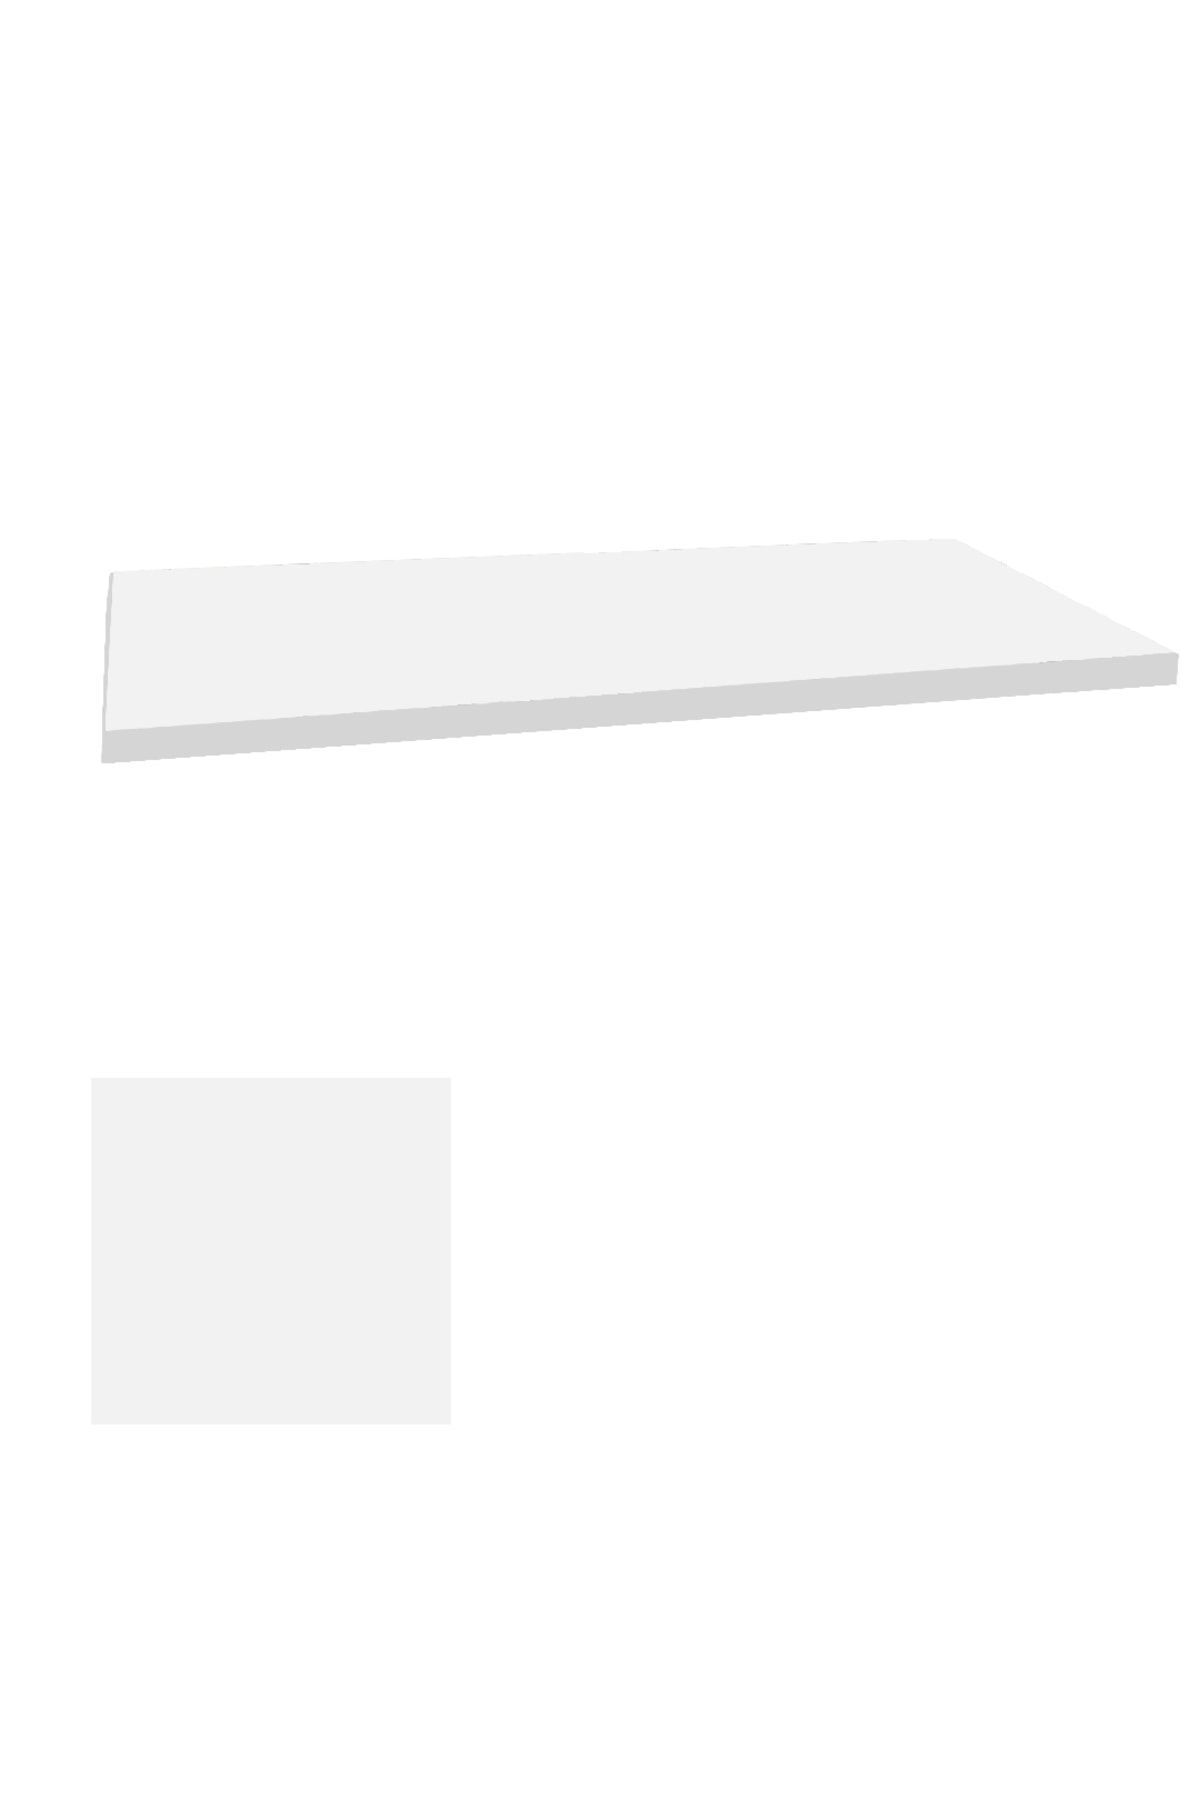 Dockers Laminat Masa Tablası (60x110) - Beyaz